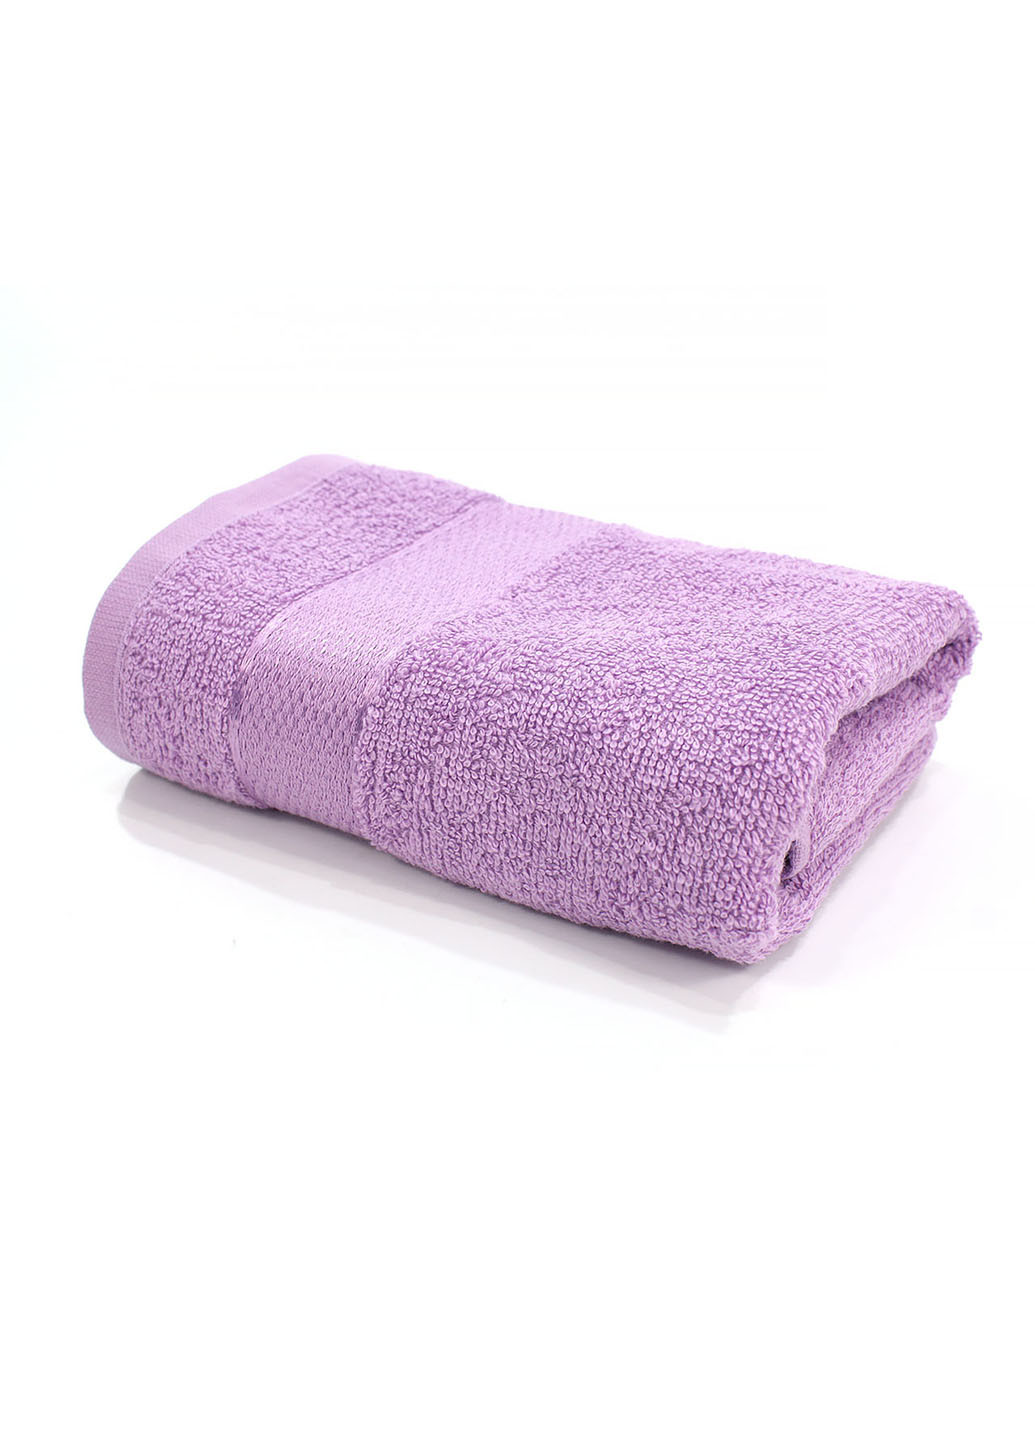 Еней-Плюс полотенце махровое бс0024 70х140 фиолетовый производство - Украина